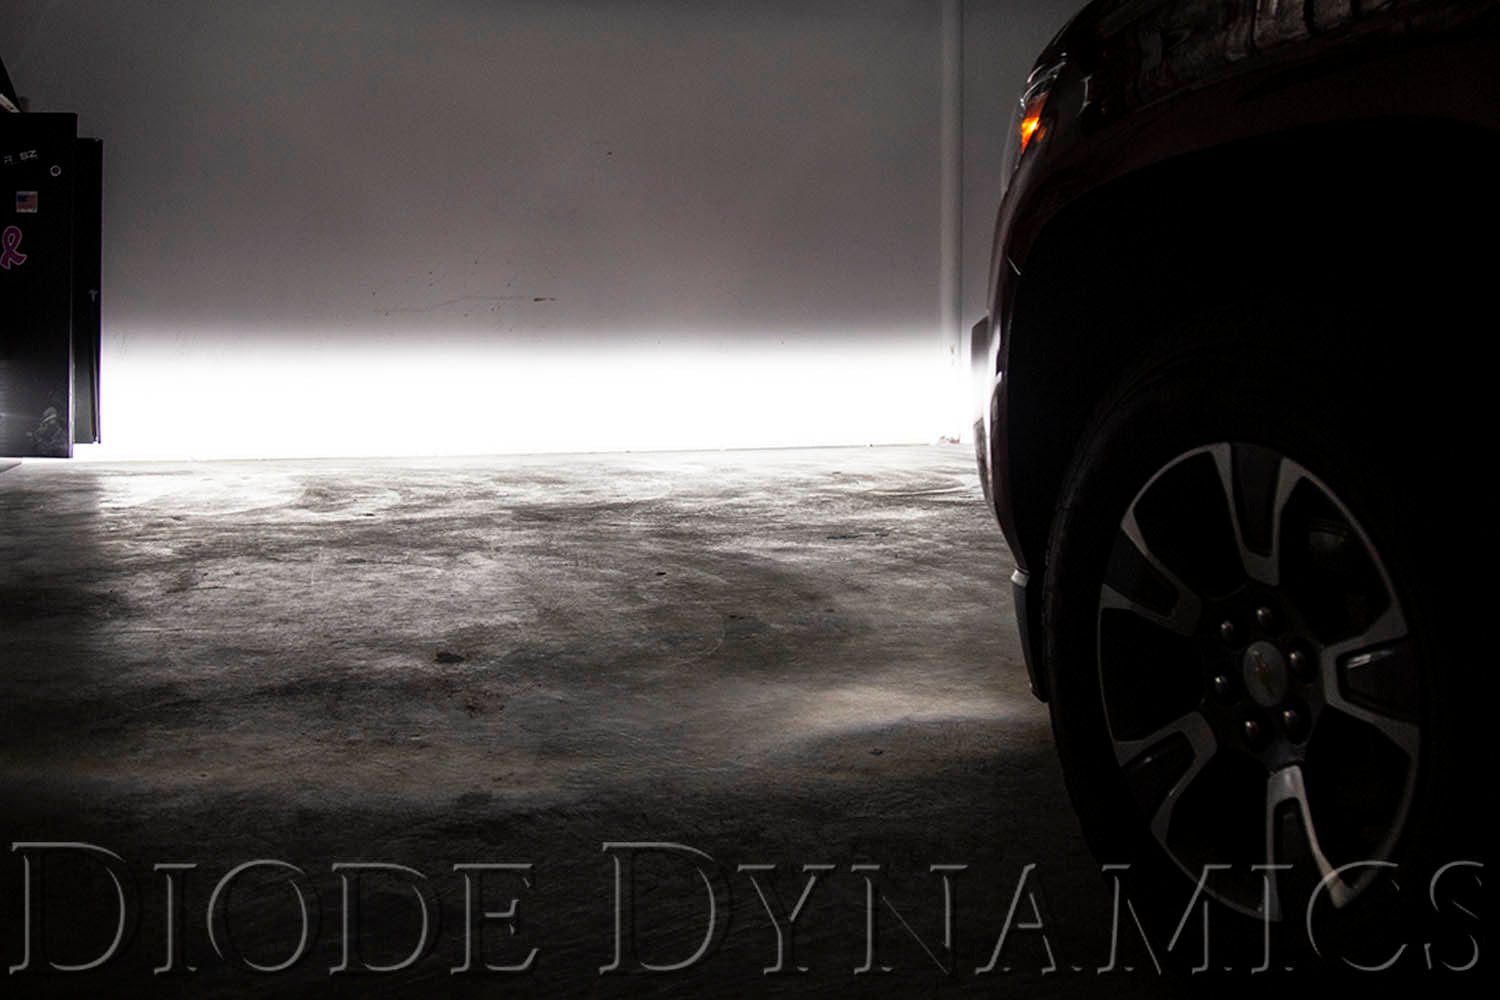 SS3 LED Fog Light Kit for 2007-2014 Chevrolet Suburban White SAE Fog Sport w/ Backlight Diode Dynamics